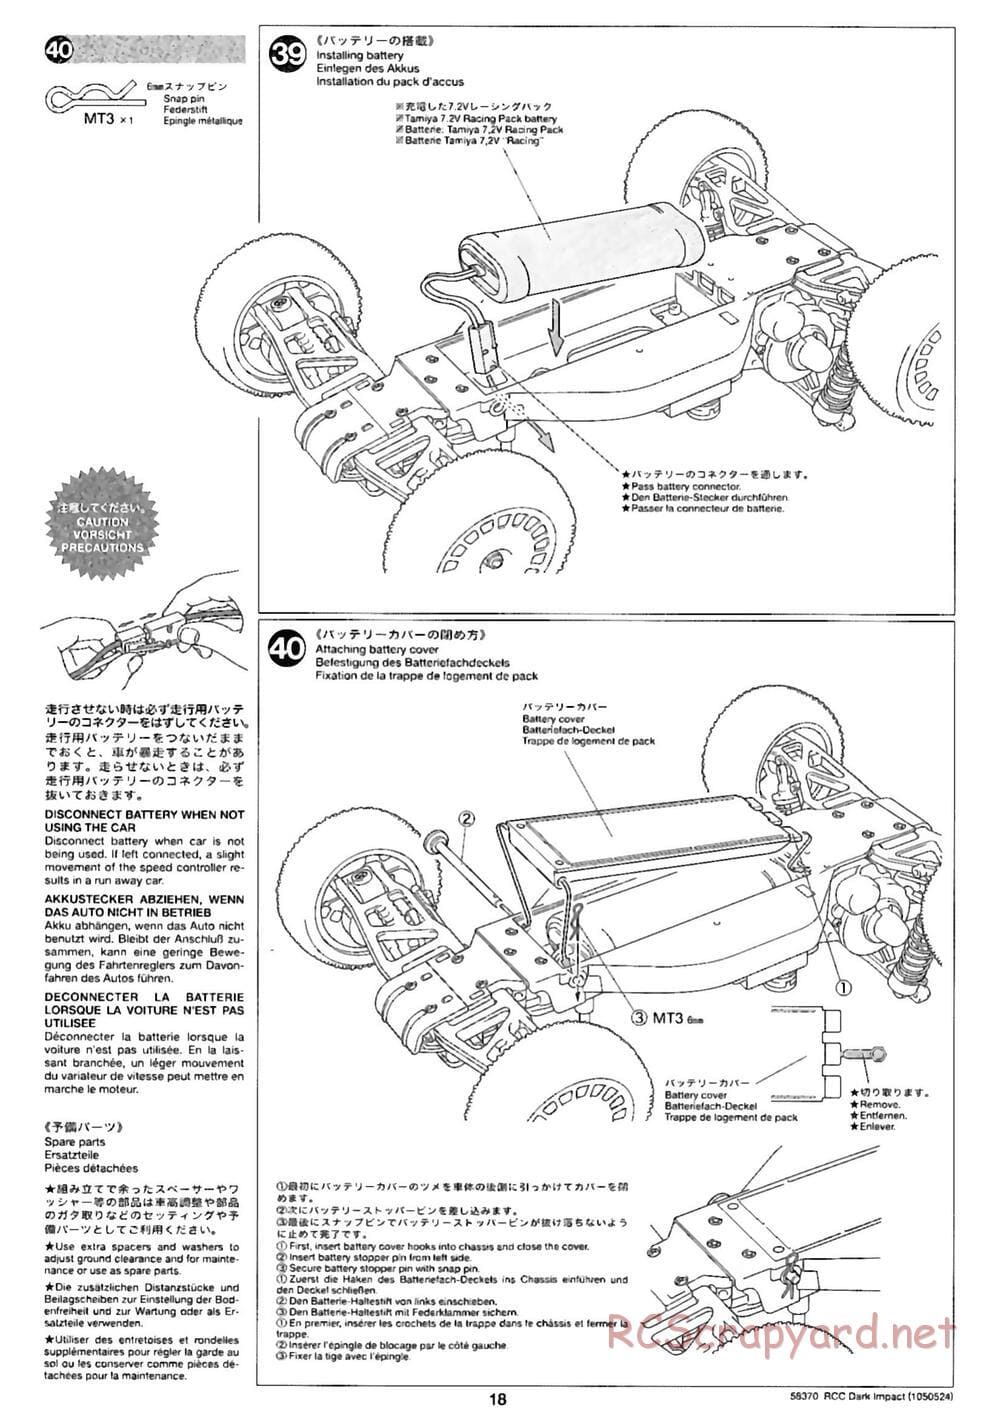 Tamiya - Dark Impact Chassis - Manual - Page 18